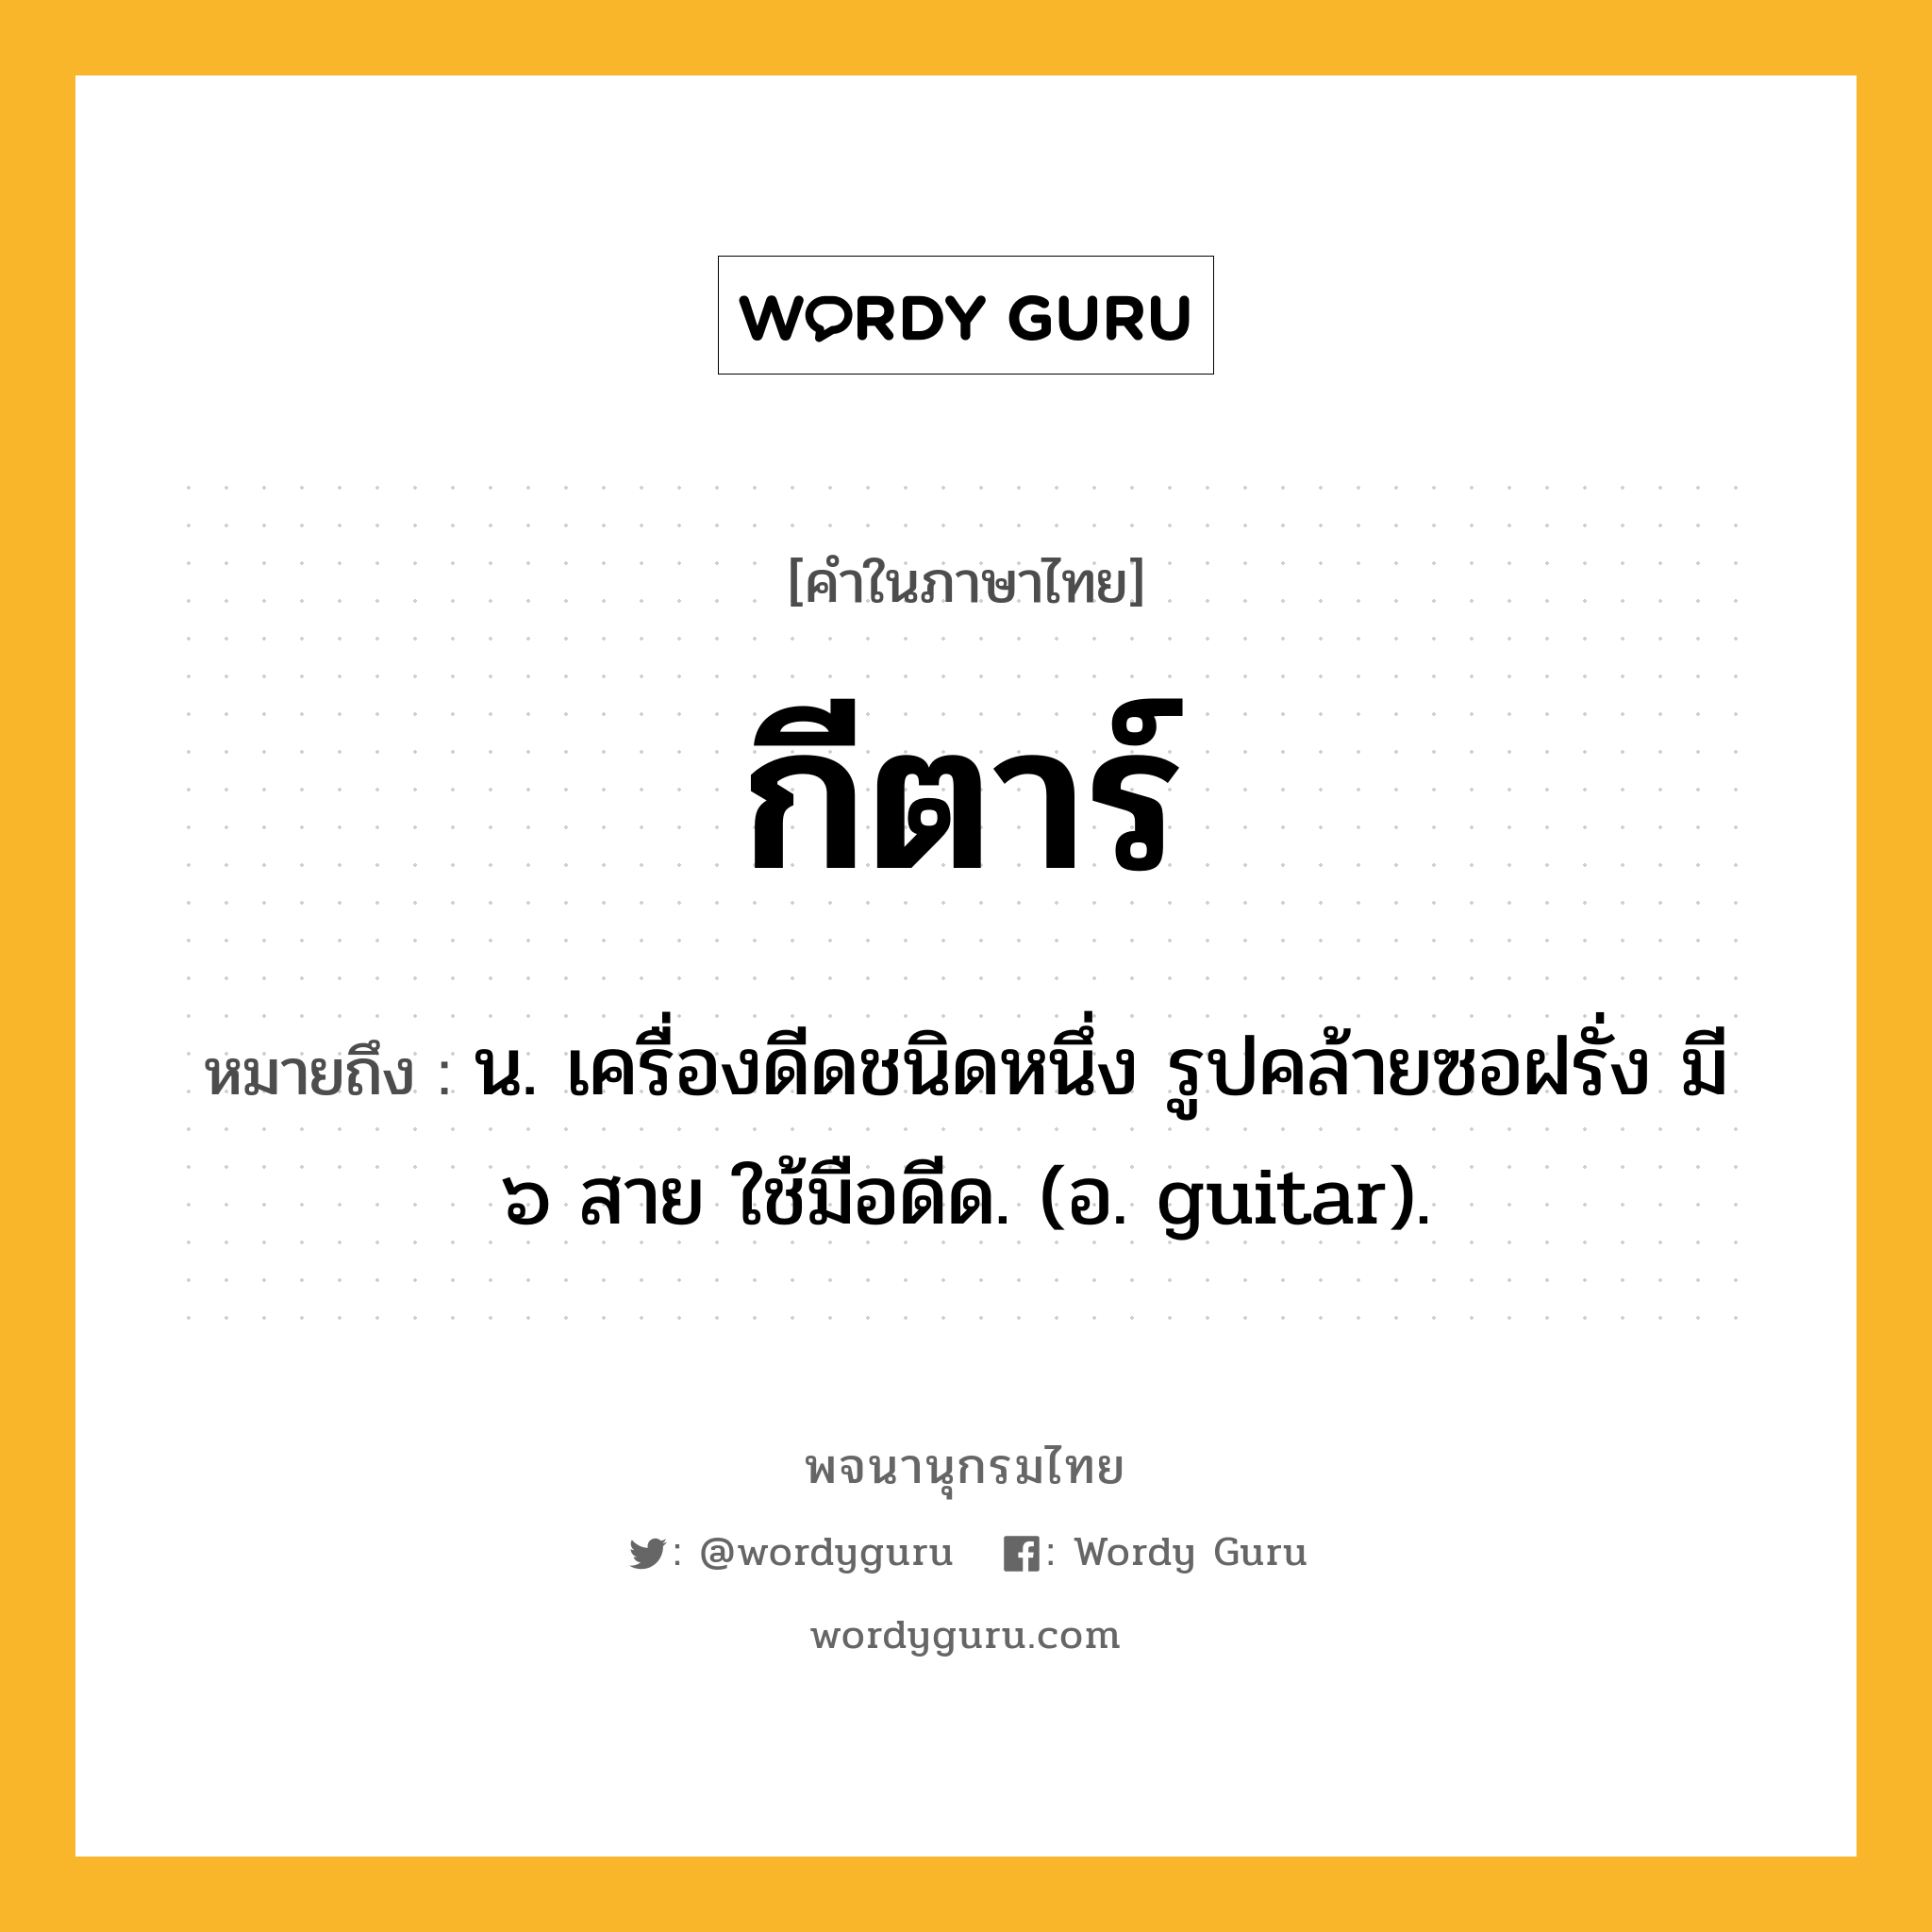 กีตาร์ ความหมาย หมายถึงอะไร?, คำในภาษาไทย กีตาร์ หมายถึง น. เครื่องดีดชนิดหนึ่ง รูปคล้ายซอฝรั่ง มี ๖ สาย ใช้มือดีด. (อ. guitar).